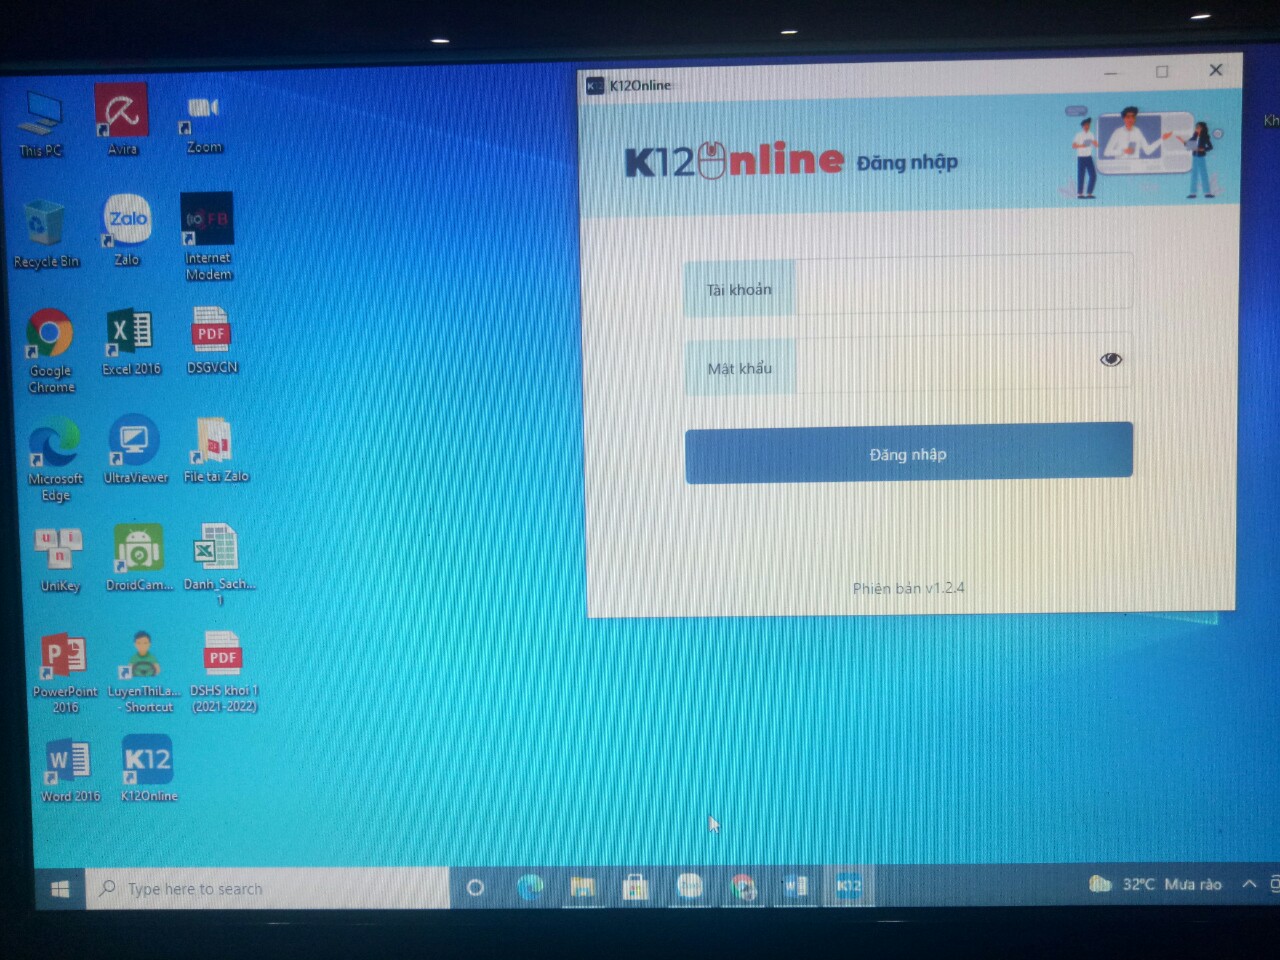 K12 online trên máy tính